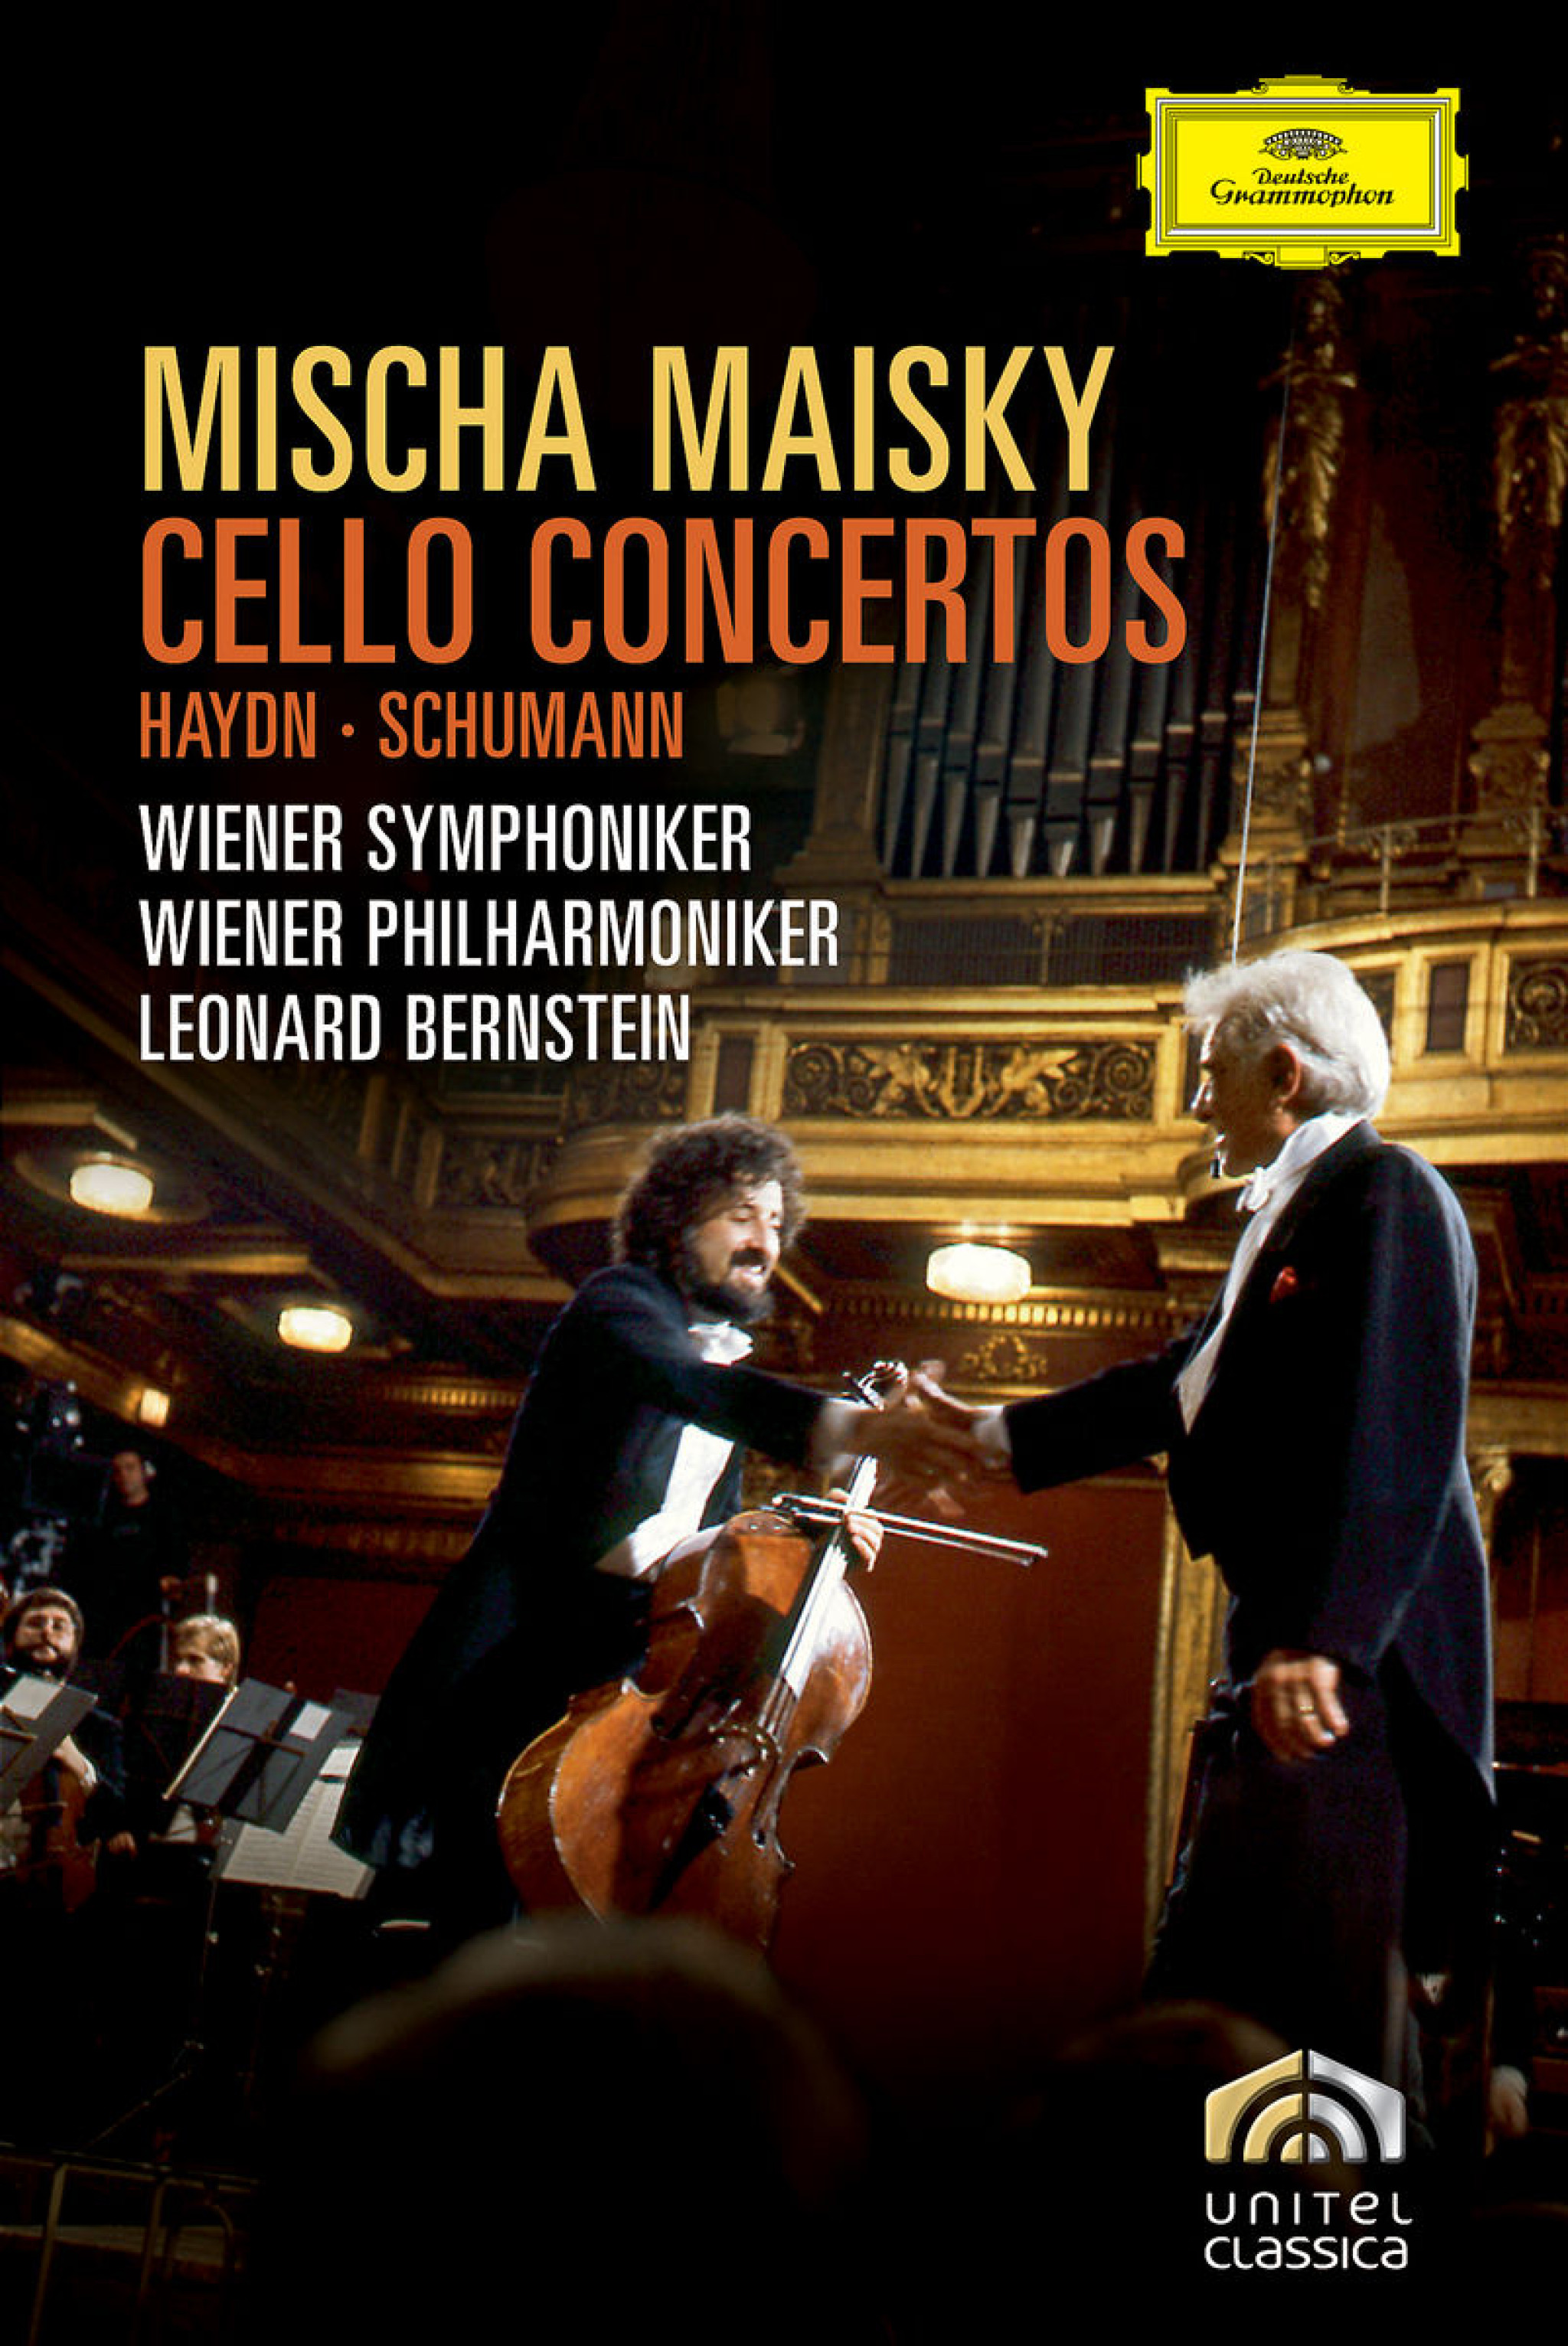 Haydn, Schumann: Cello Concertos 0044007343511